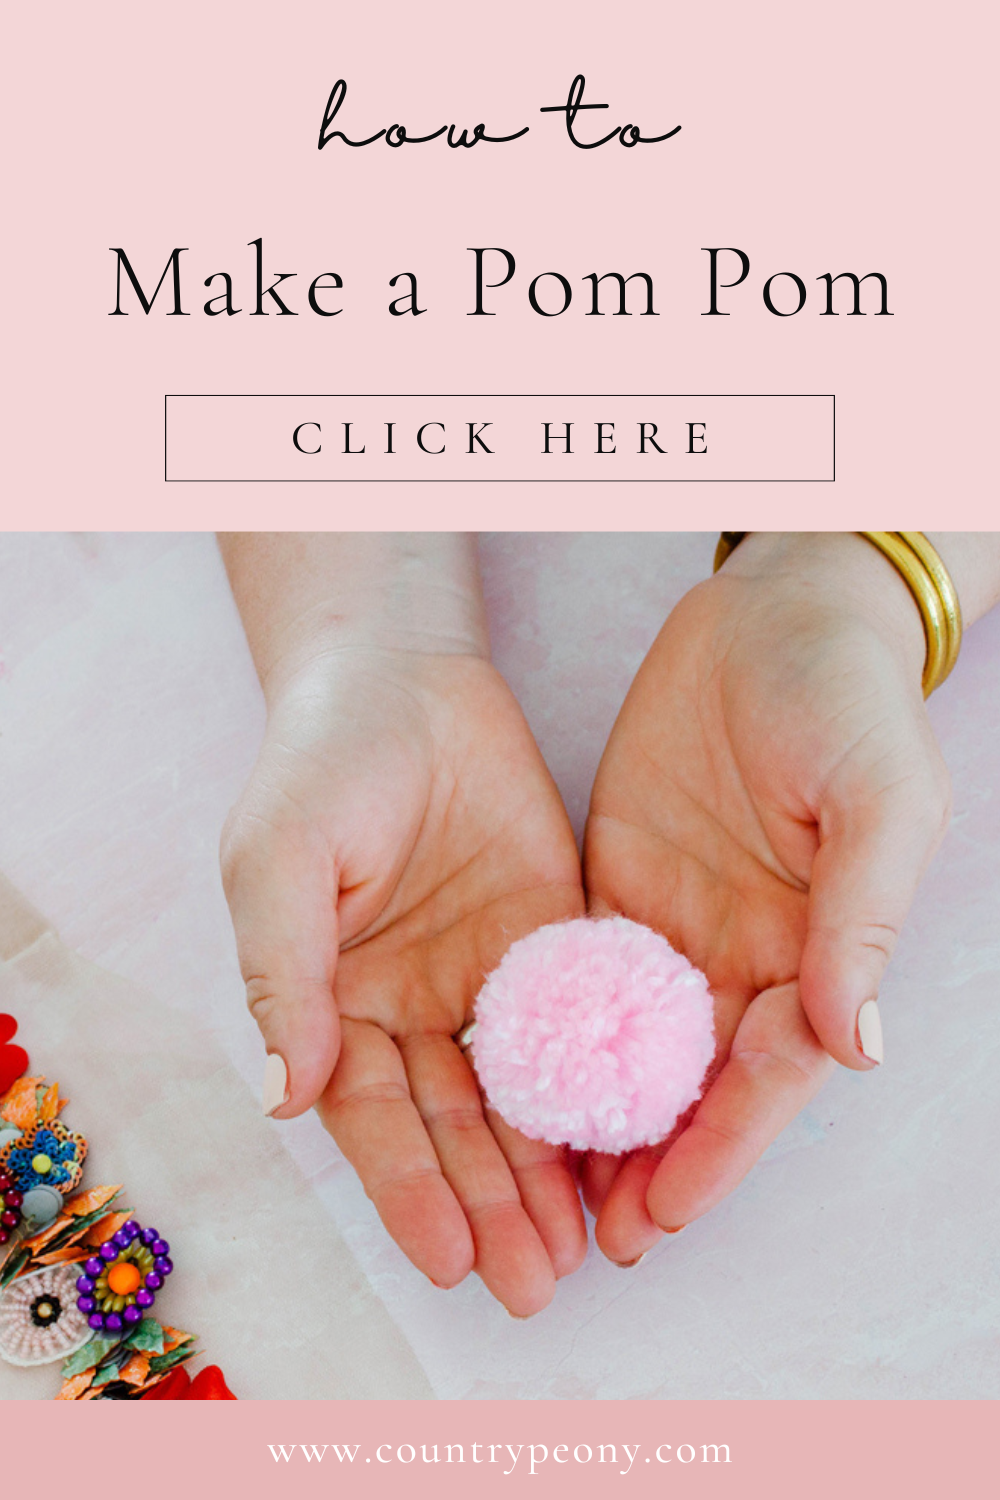 How to Make Yarn Pom Poms - Video Tutorial  Clover pom pom maker, Yarn pom  pom, Pom pom tutorial